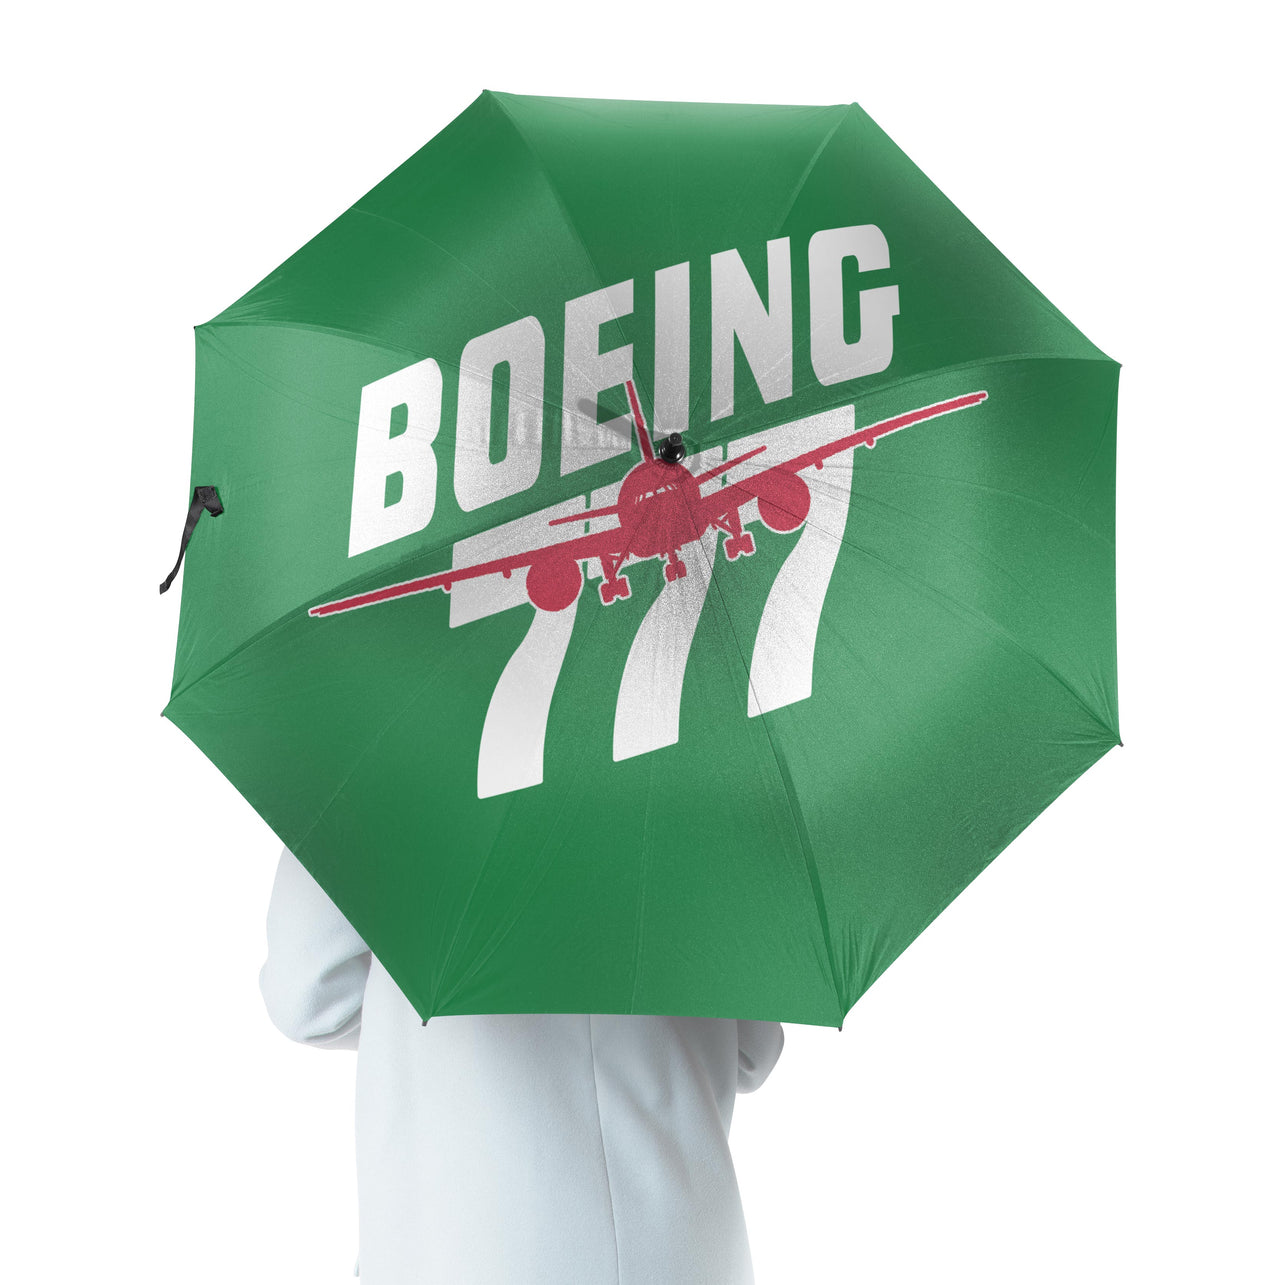 Amazing Boeing 777 Designed Umbrella